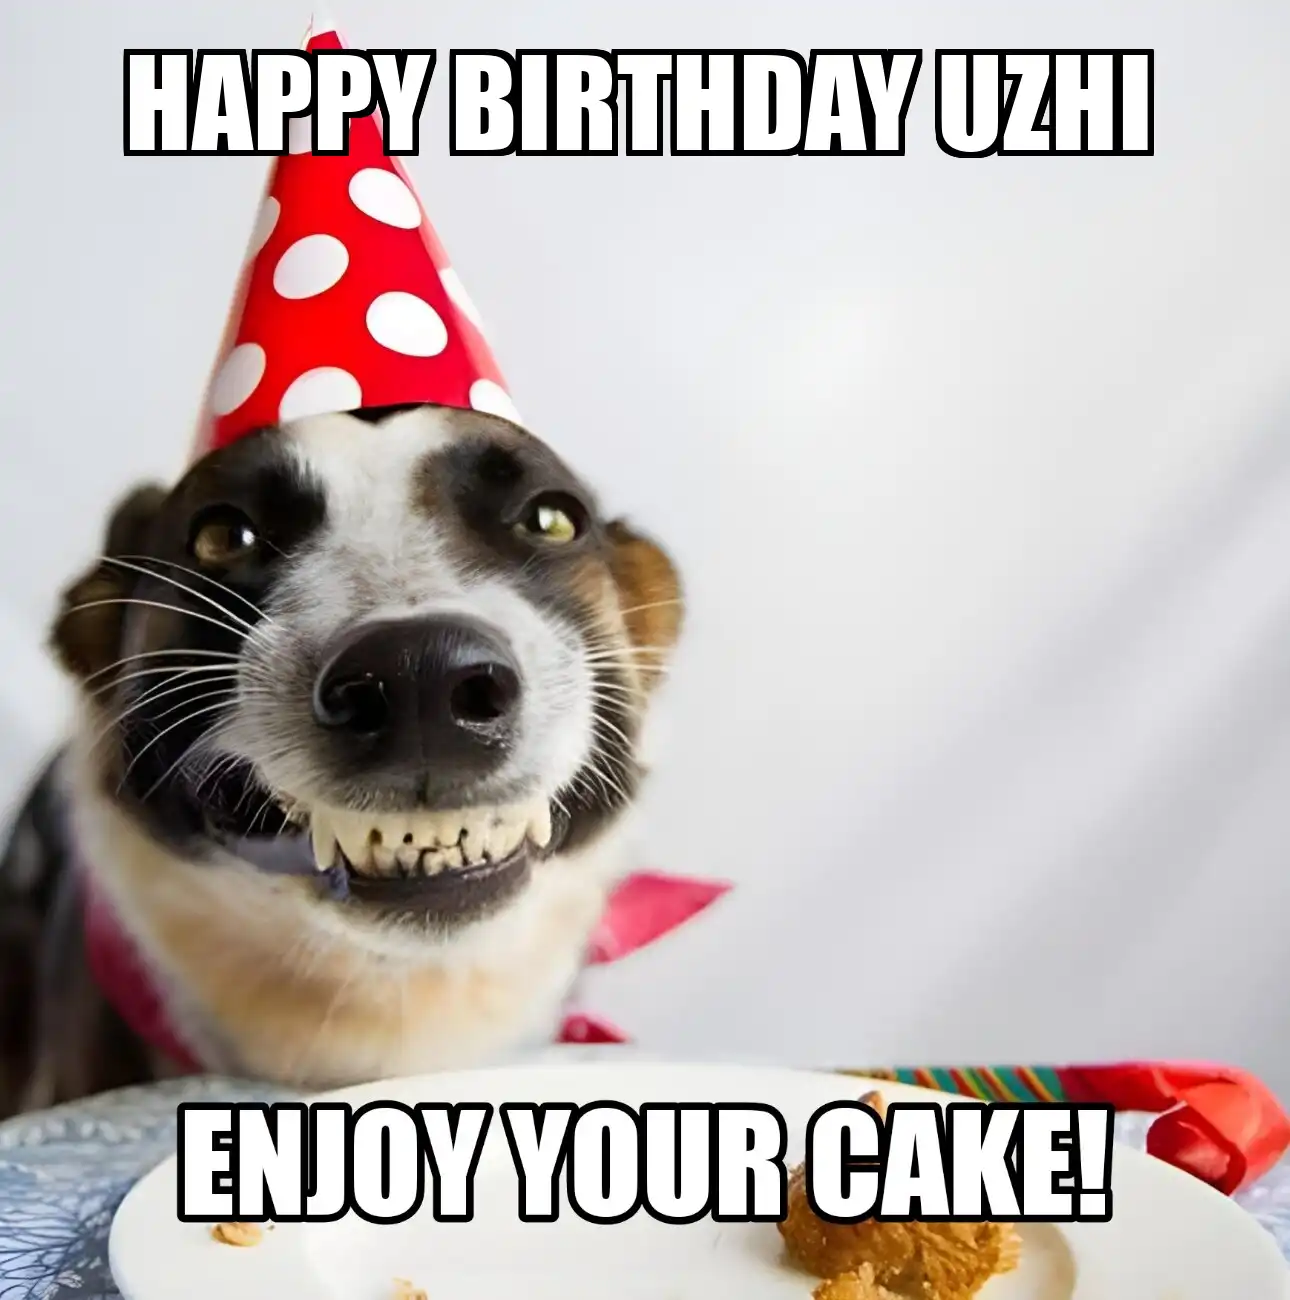 Happy Birthday Uzhi Enjoy Your Cake Dog Meme